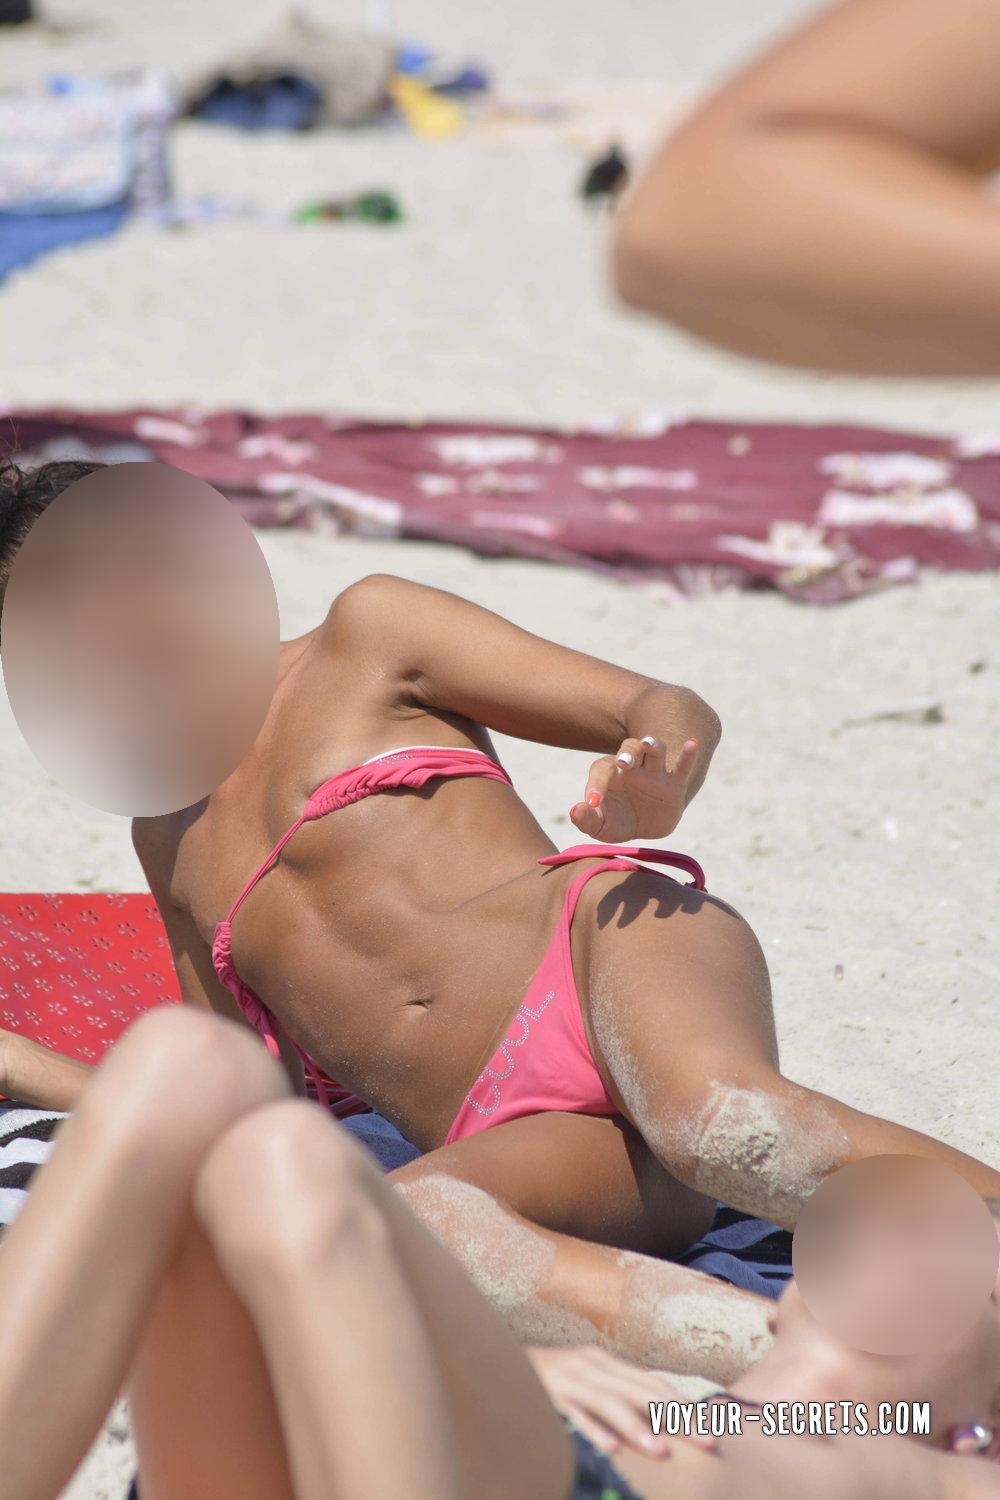 Beach girl shows lots of accidental nudity - Voyeur Videos